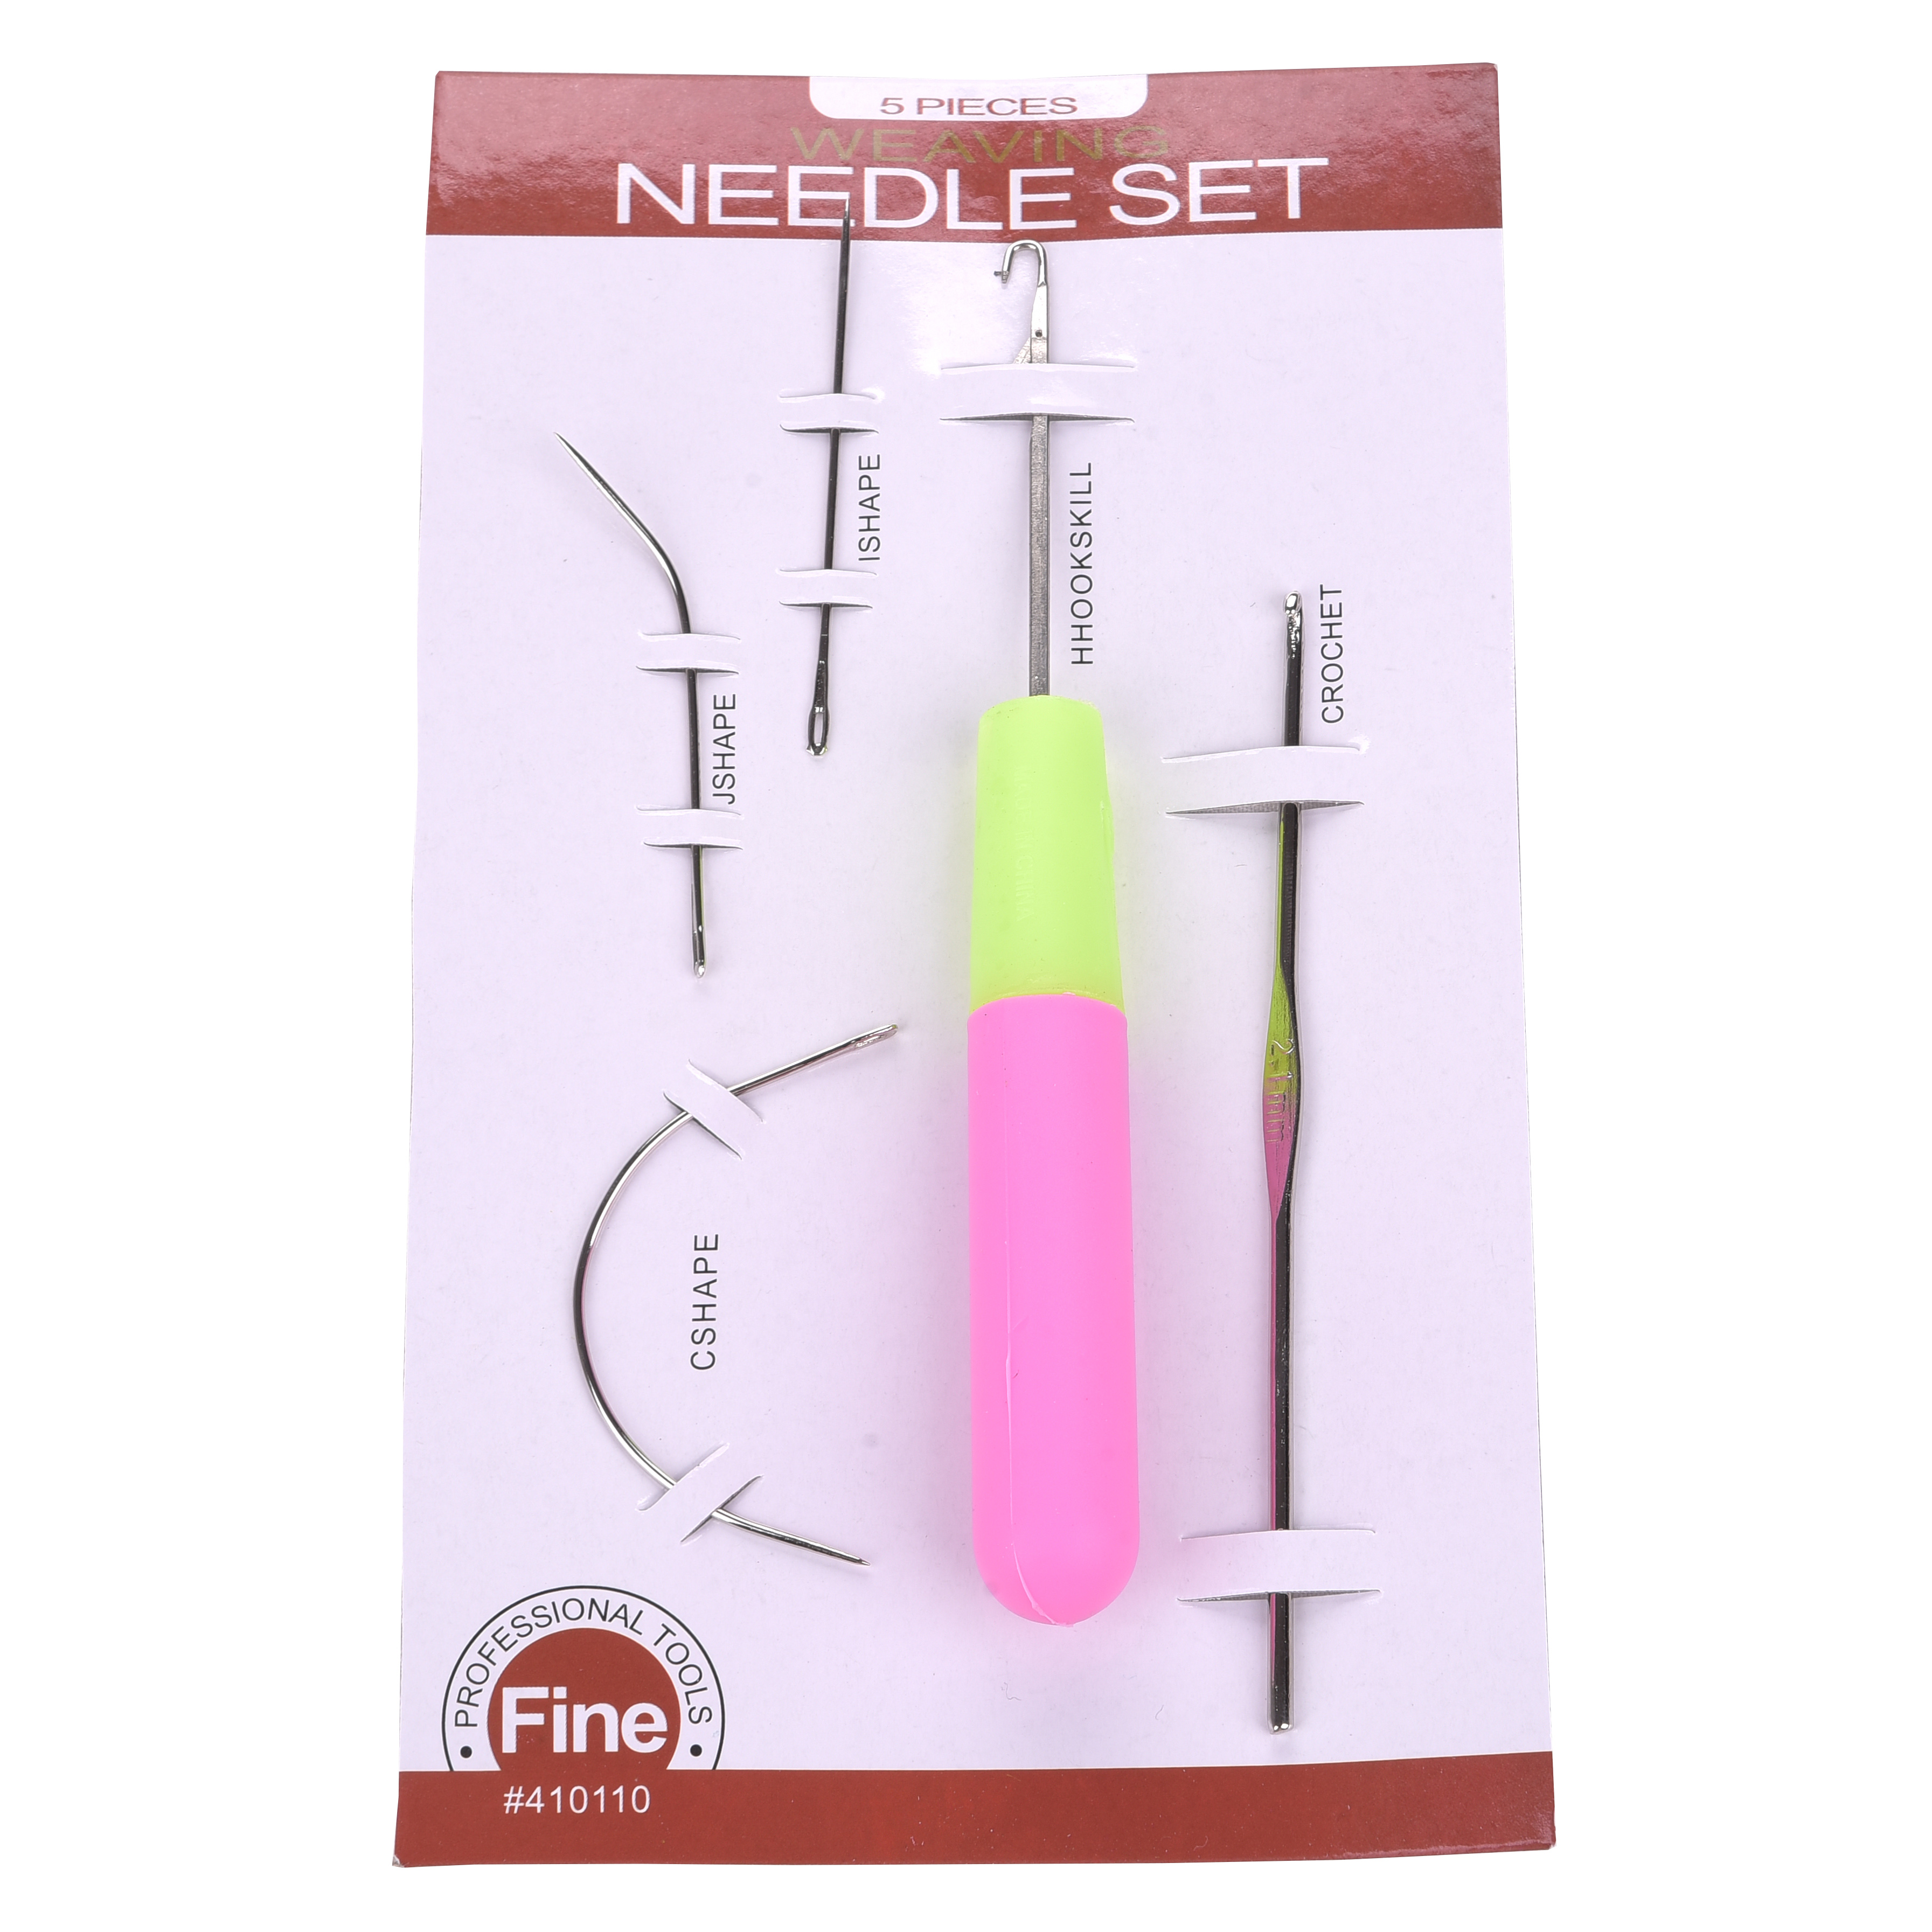 Weaving Needle Set